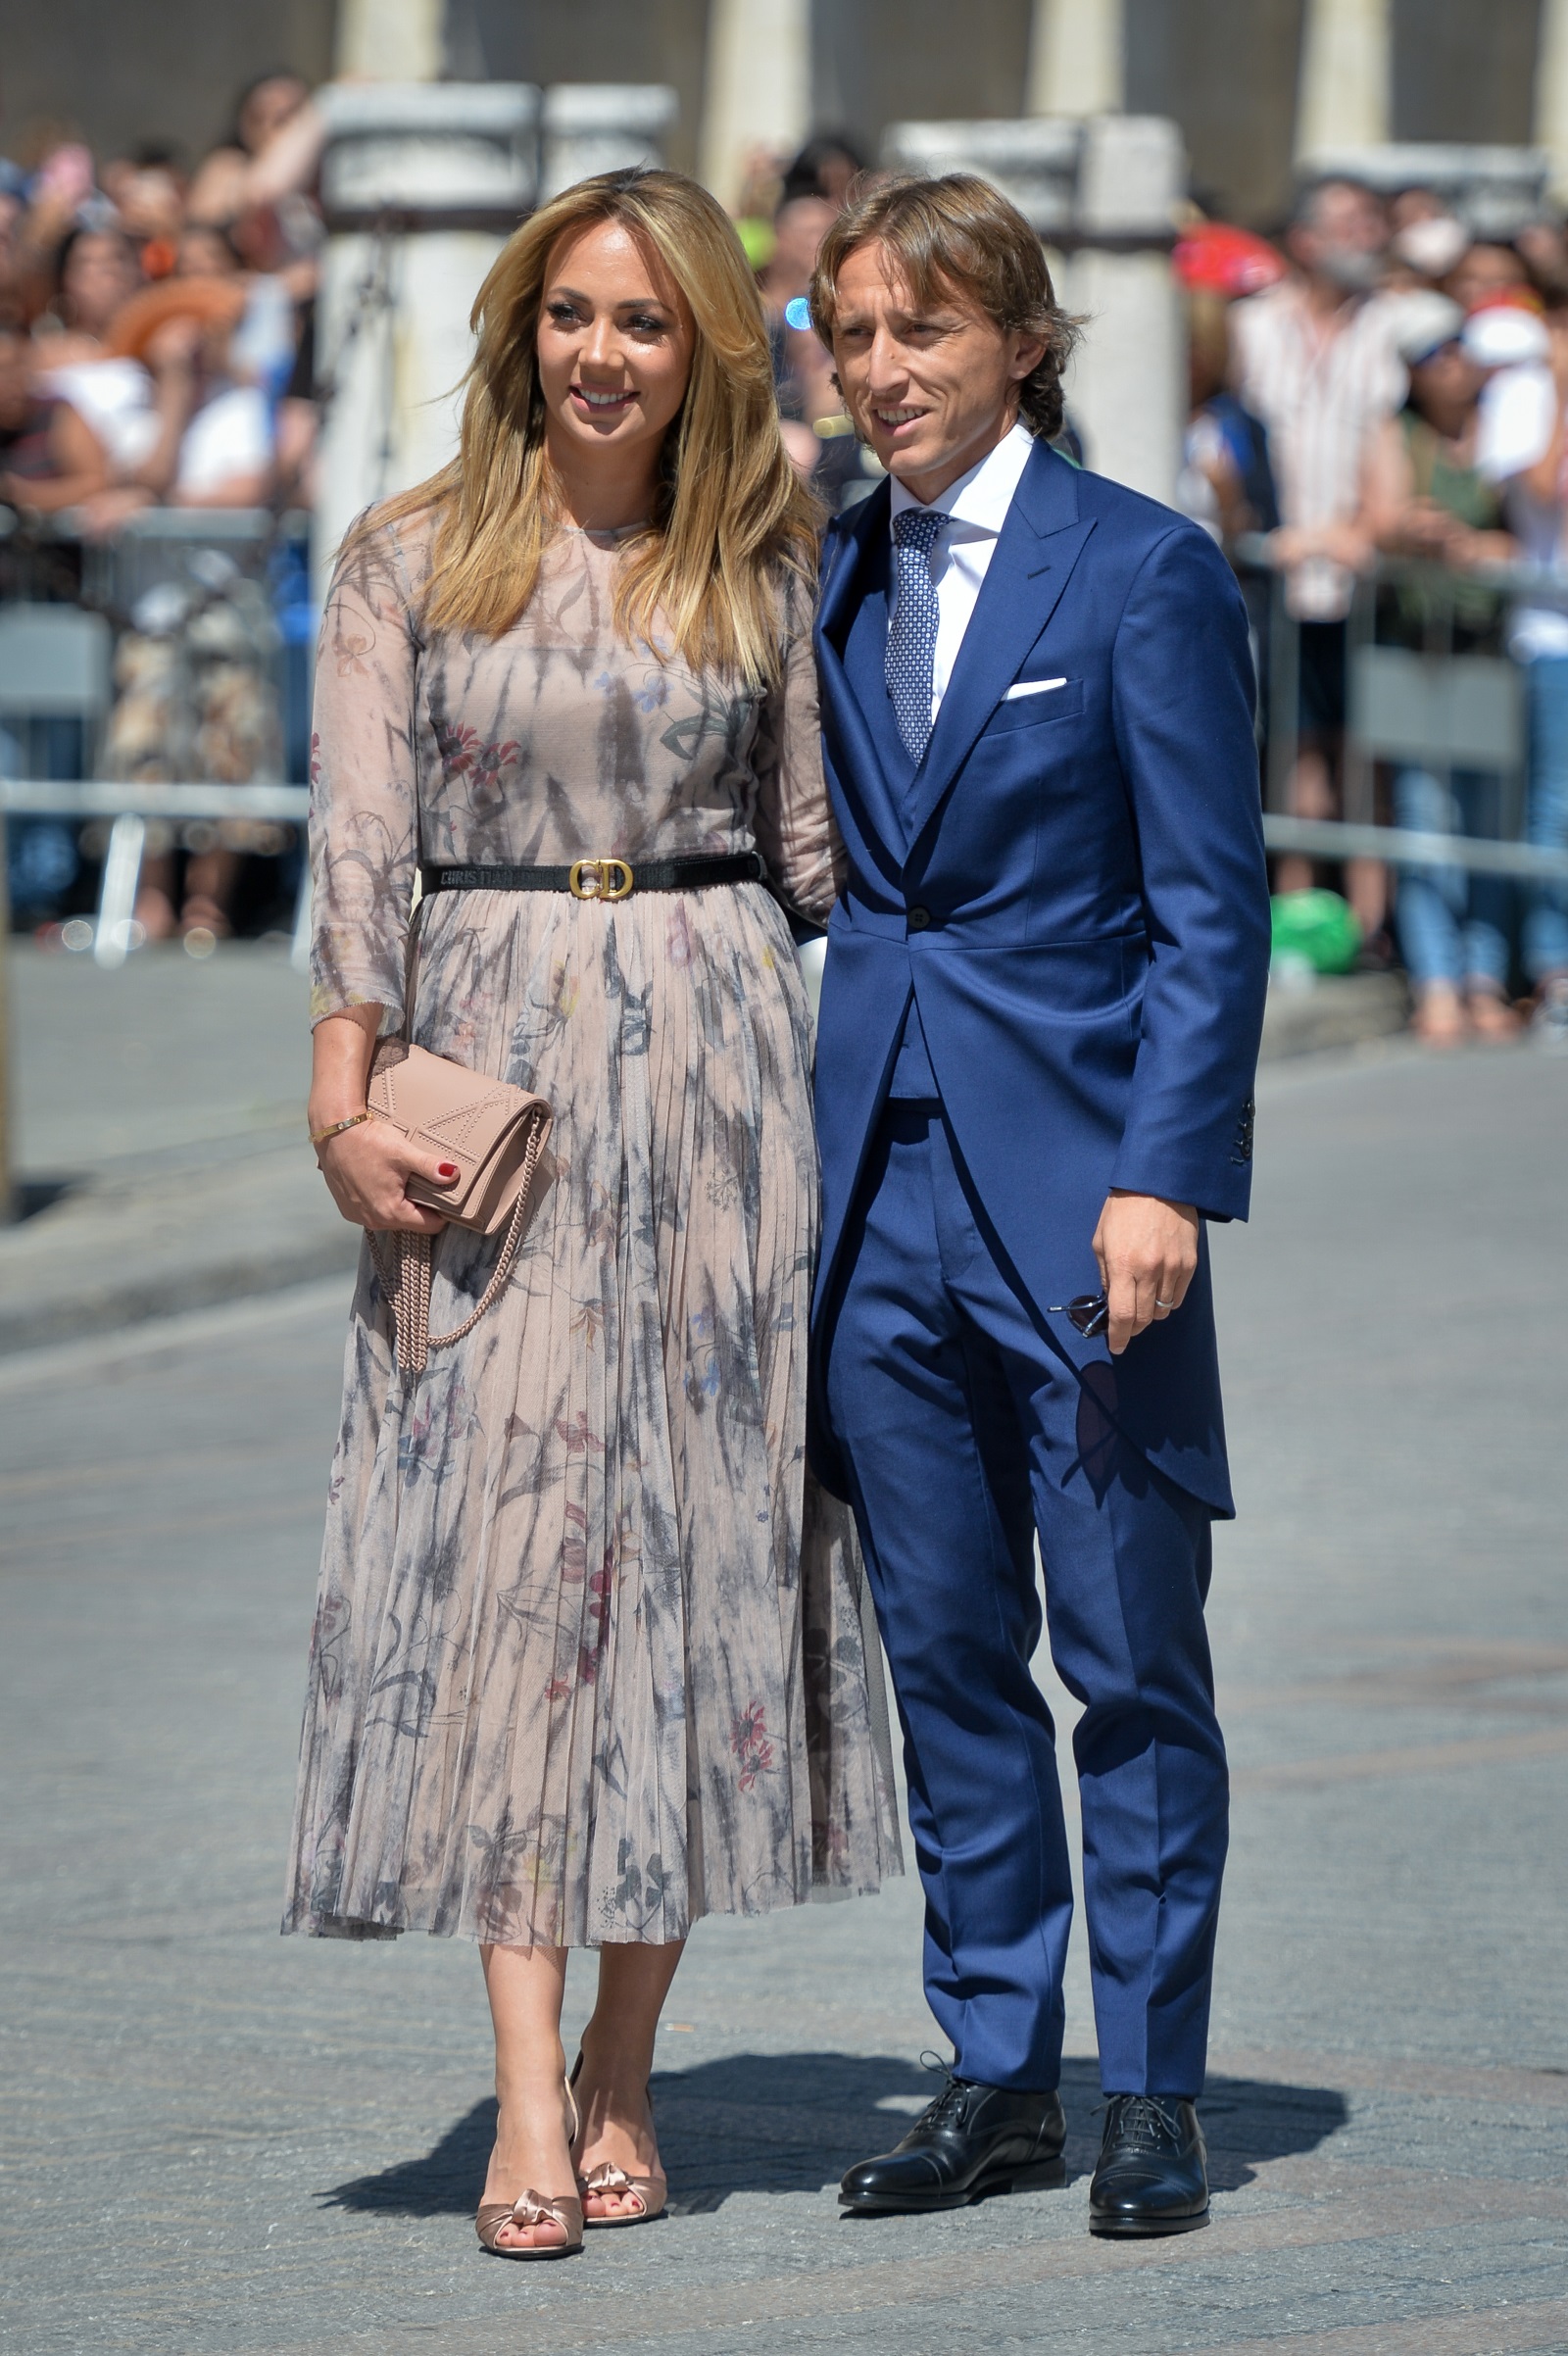 Сред гостите на сватбата бяха Лука Модрич и половинката му Ваня Боснич